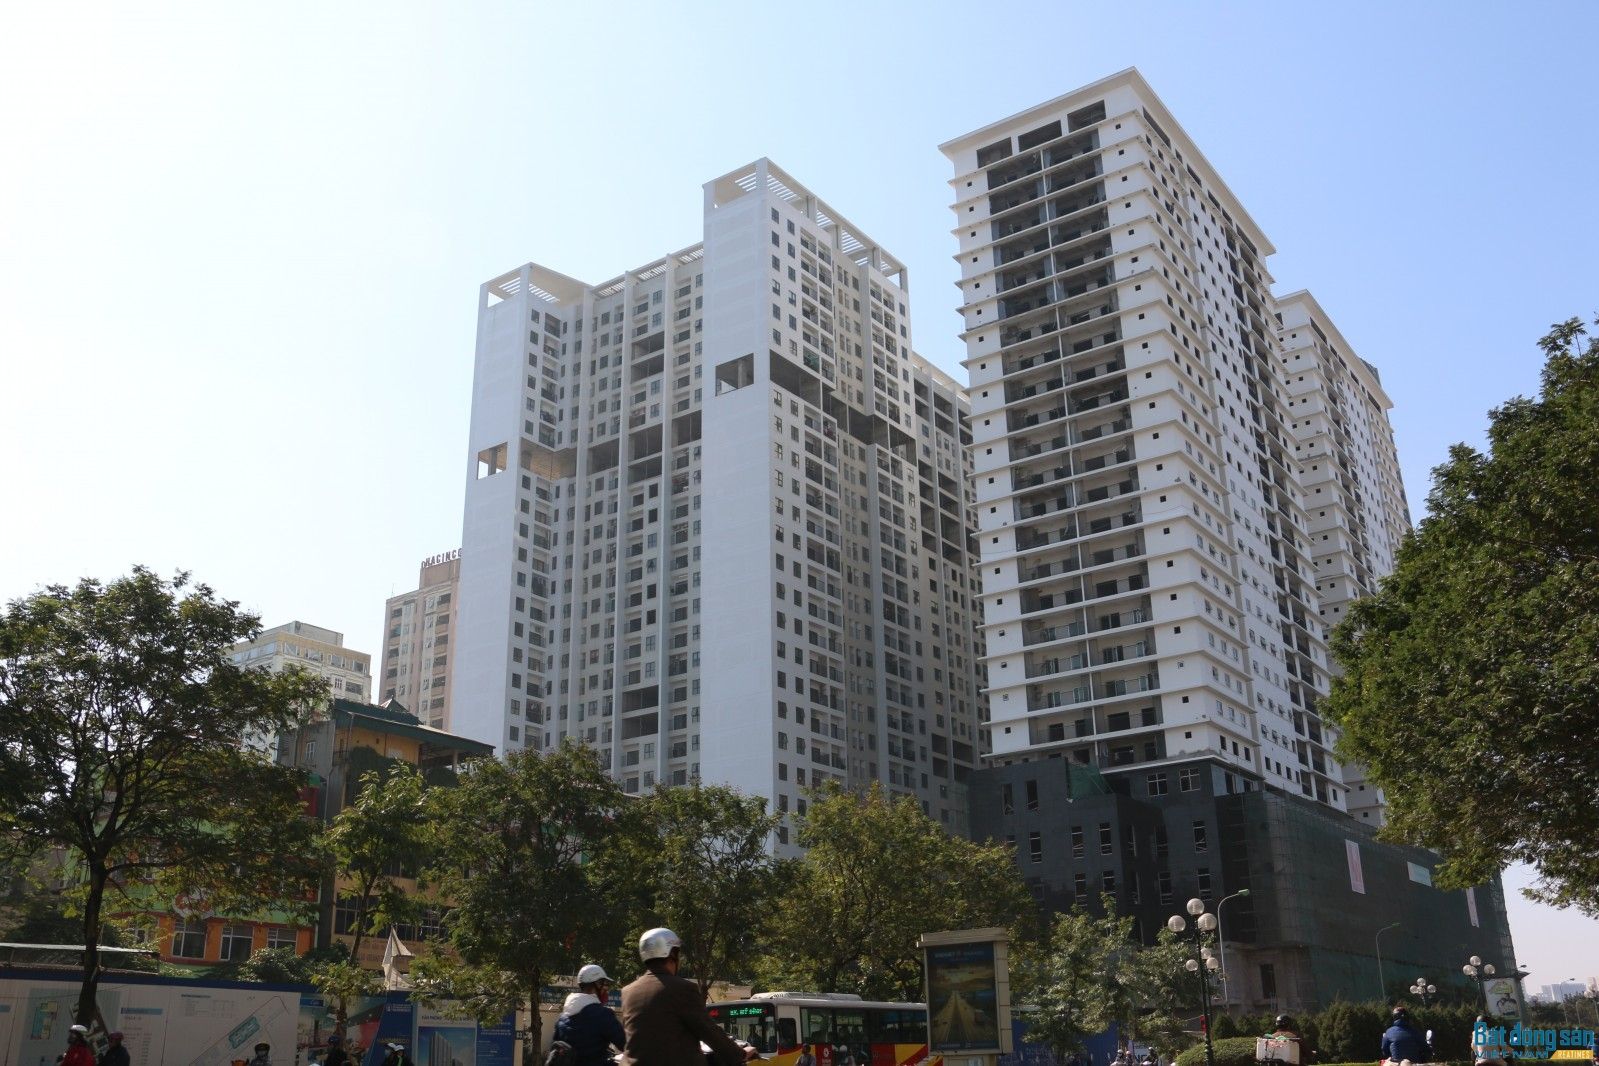 Chung cư Times Tower - Lê Văn Lương hiện đang trong giai đoạn hoàn thiện và dự kiến bào giao căn hộ cho khách hàng vào tháng 4/2017. Ảnh: Nhật Bình.